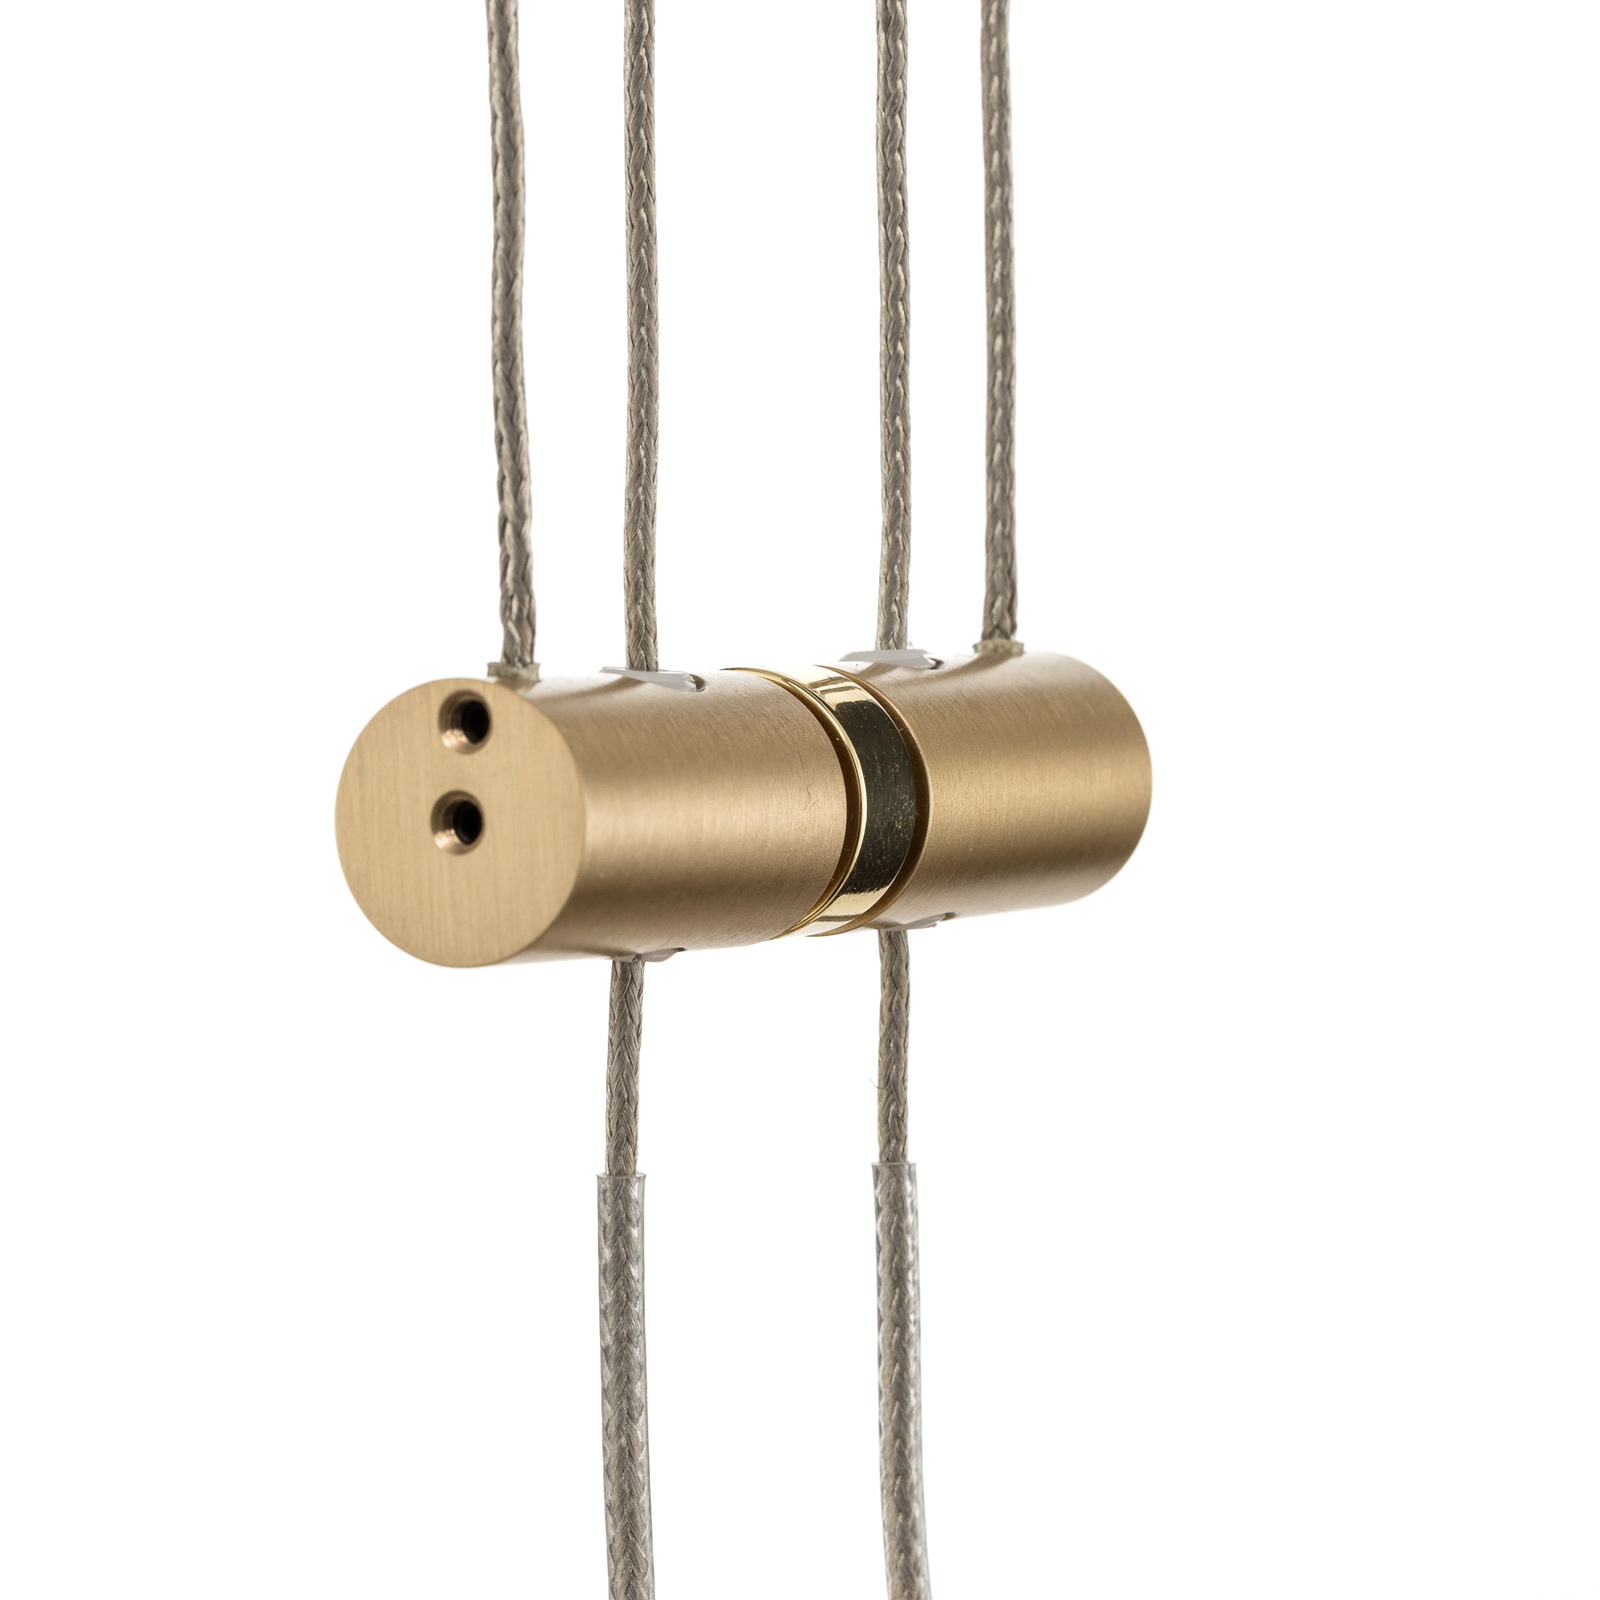 BANKAMP Grazia hanging lamp 3-bulb round brass